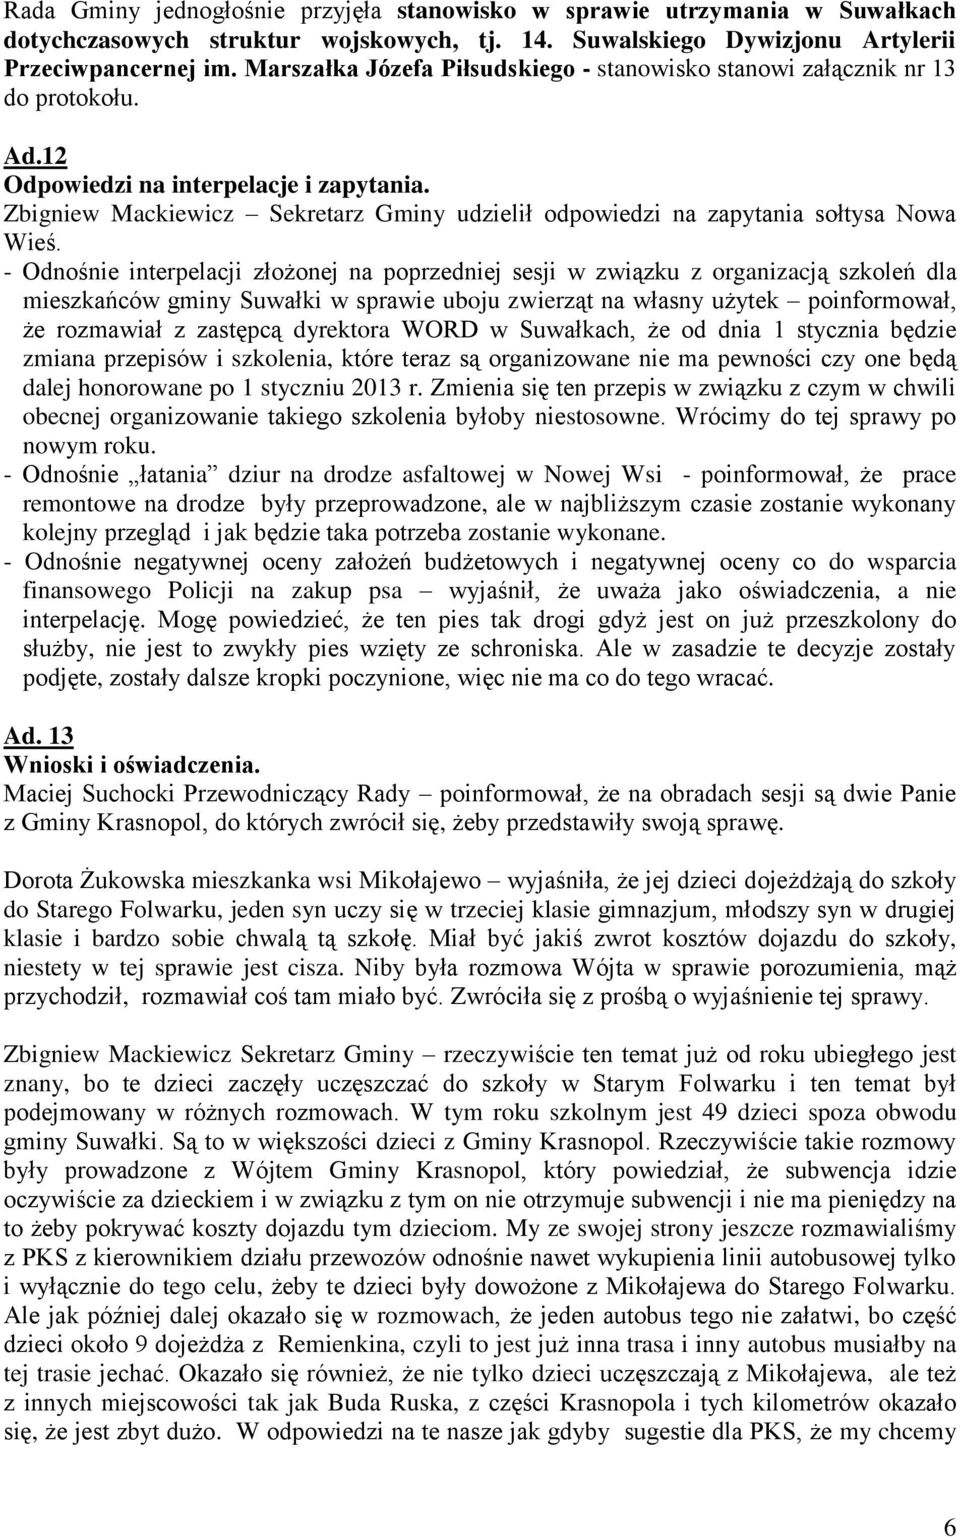 Zbigniew Mackiewicz Sekretarz Gminy udzielił odpowiedzi na zapytania sołtysa Nowa Wieś.